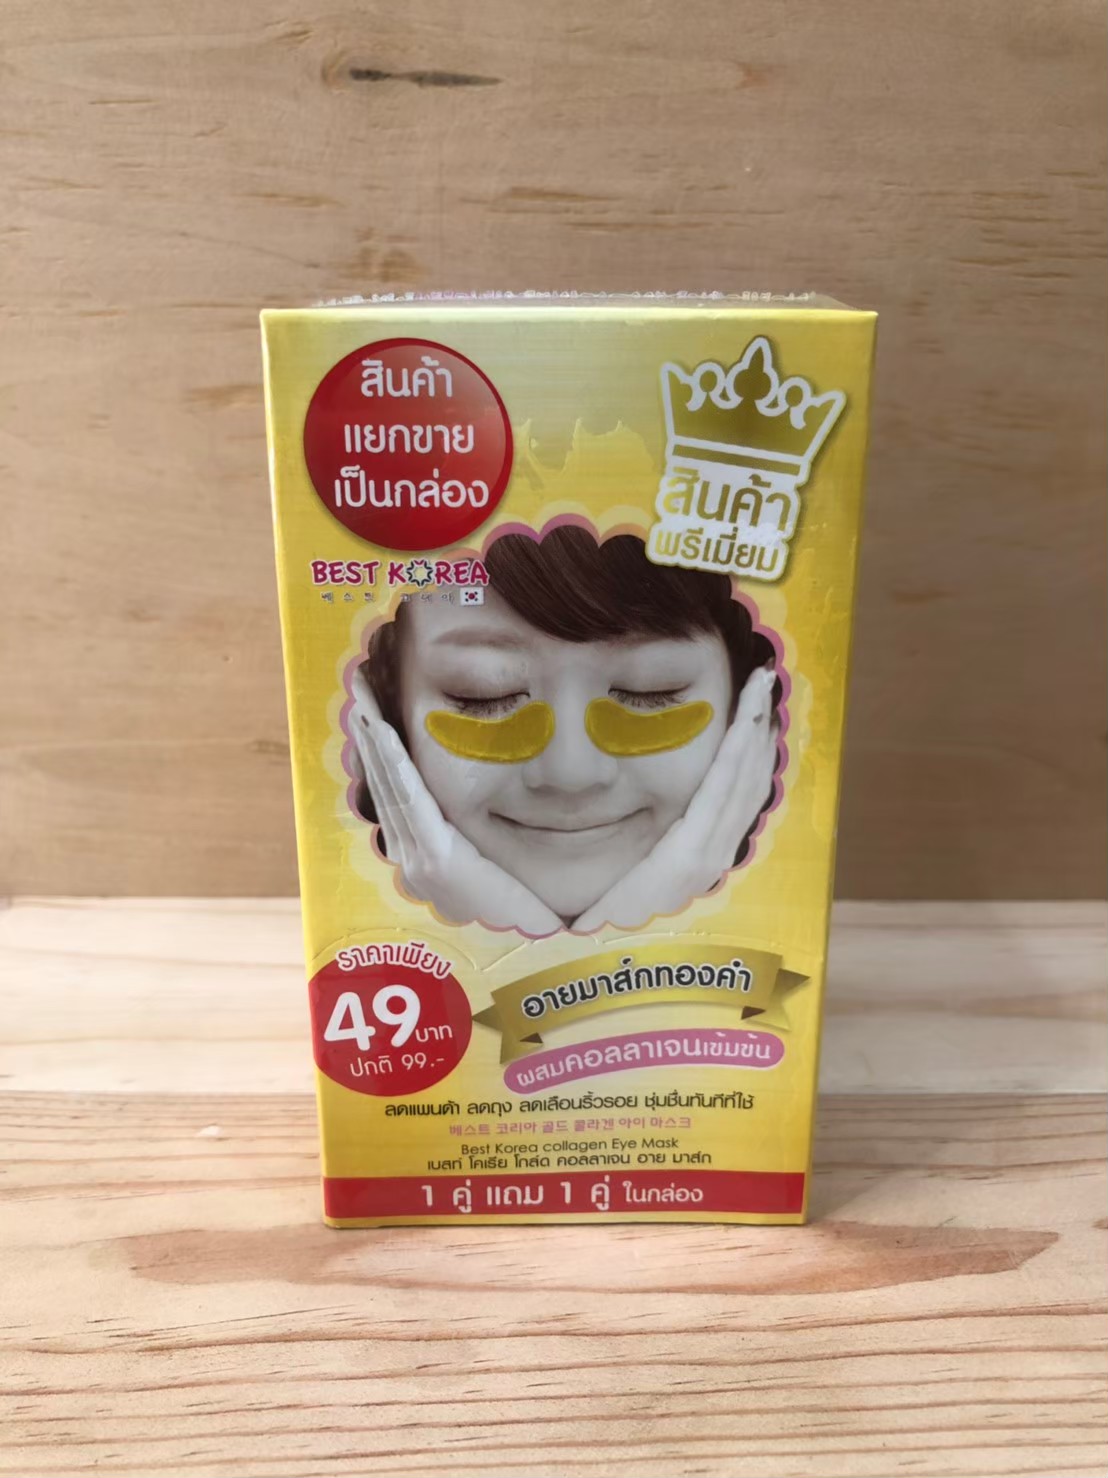 BEST KOREA Gold Collagen Eye Mask 12 กรัม x 6 กล่อง เบสท์ โคเรีย โกลด์ คอลลาเจน อาย มาส์ก อายมาส์กทองคำ มาส์กใต้ตา  มาส์กแล้วรู้สึกเย็นได้ทั้ง ๆ ที่ไม่ได้แช่เย็น